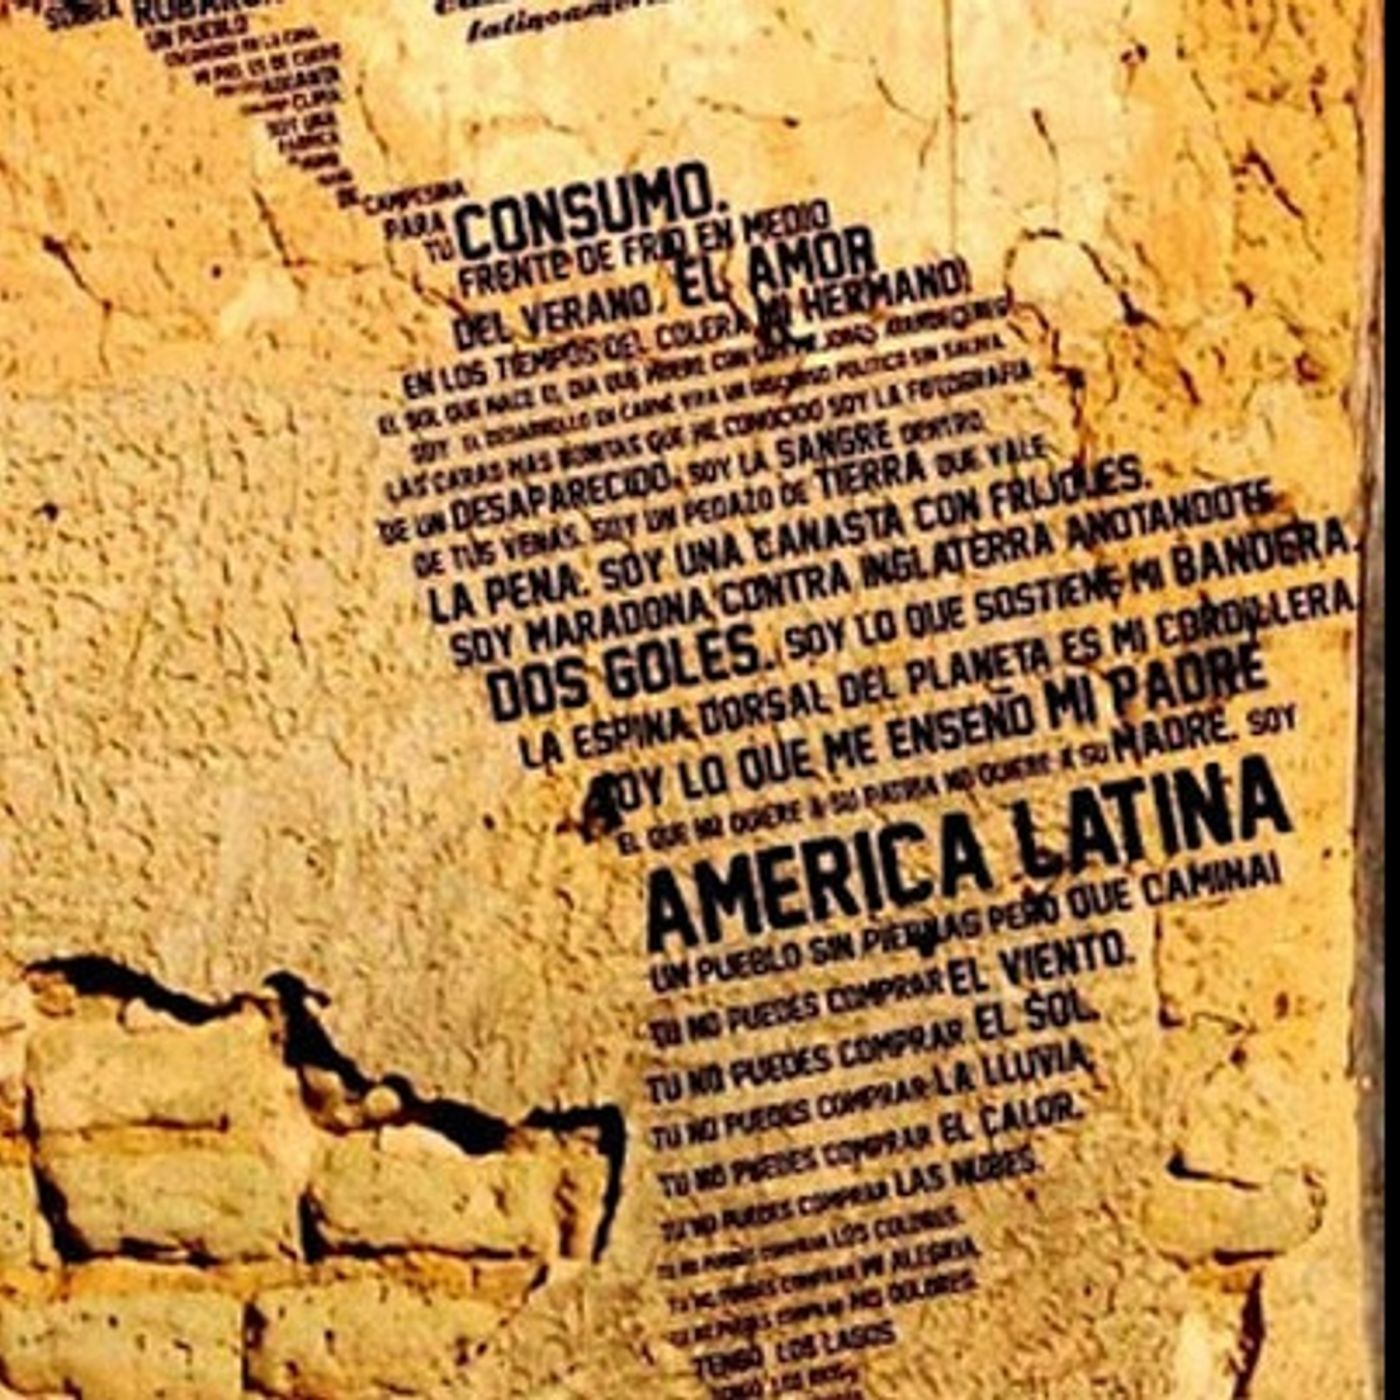 El regreso de America Latina